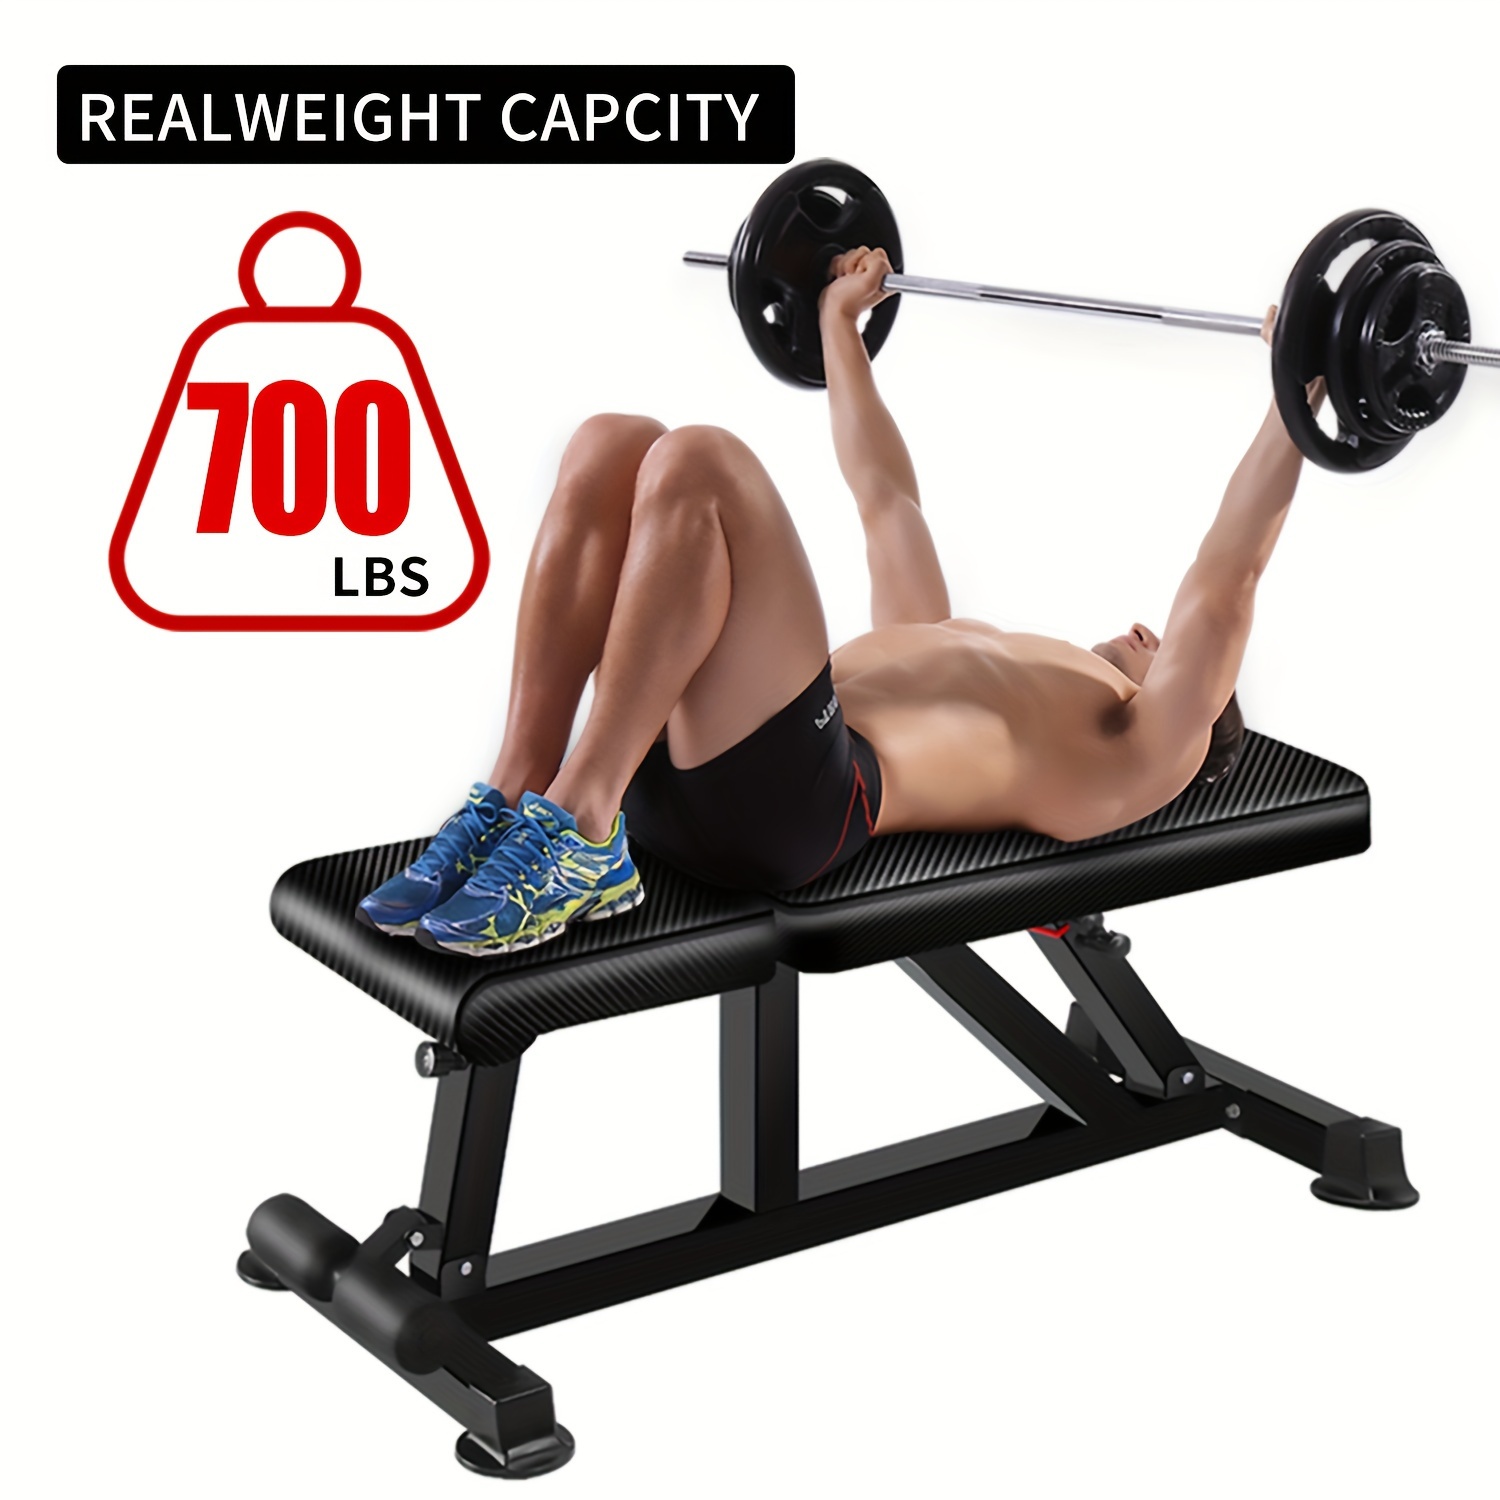 REP FITNESS Banco ajustable, AB-3100 V3 – 700 libras clasificado para  entrenamientos de gimnasio en casa y garaje, levantamiento de pesas y